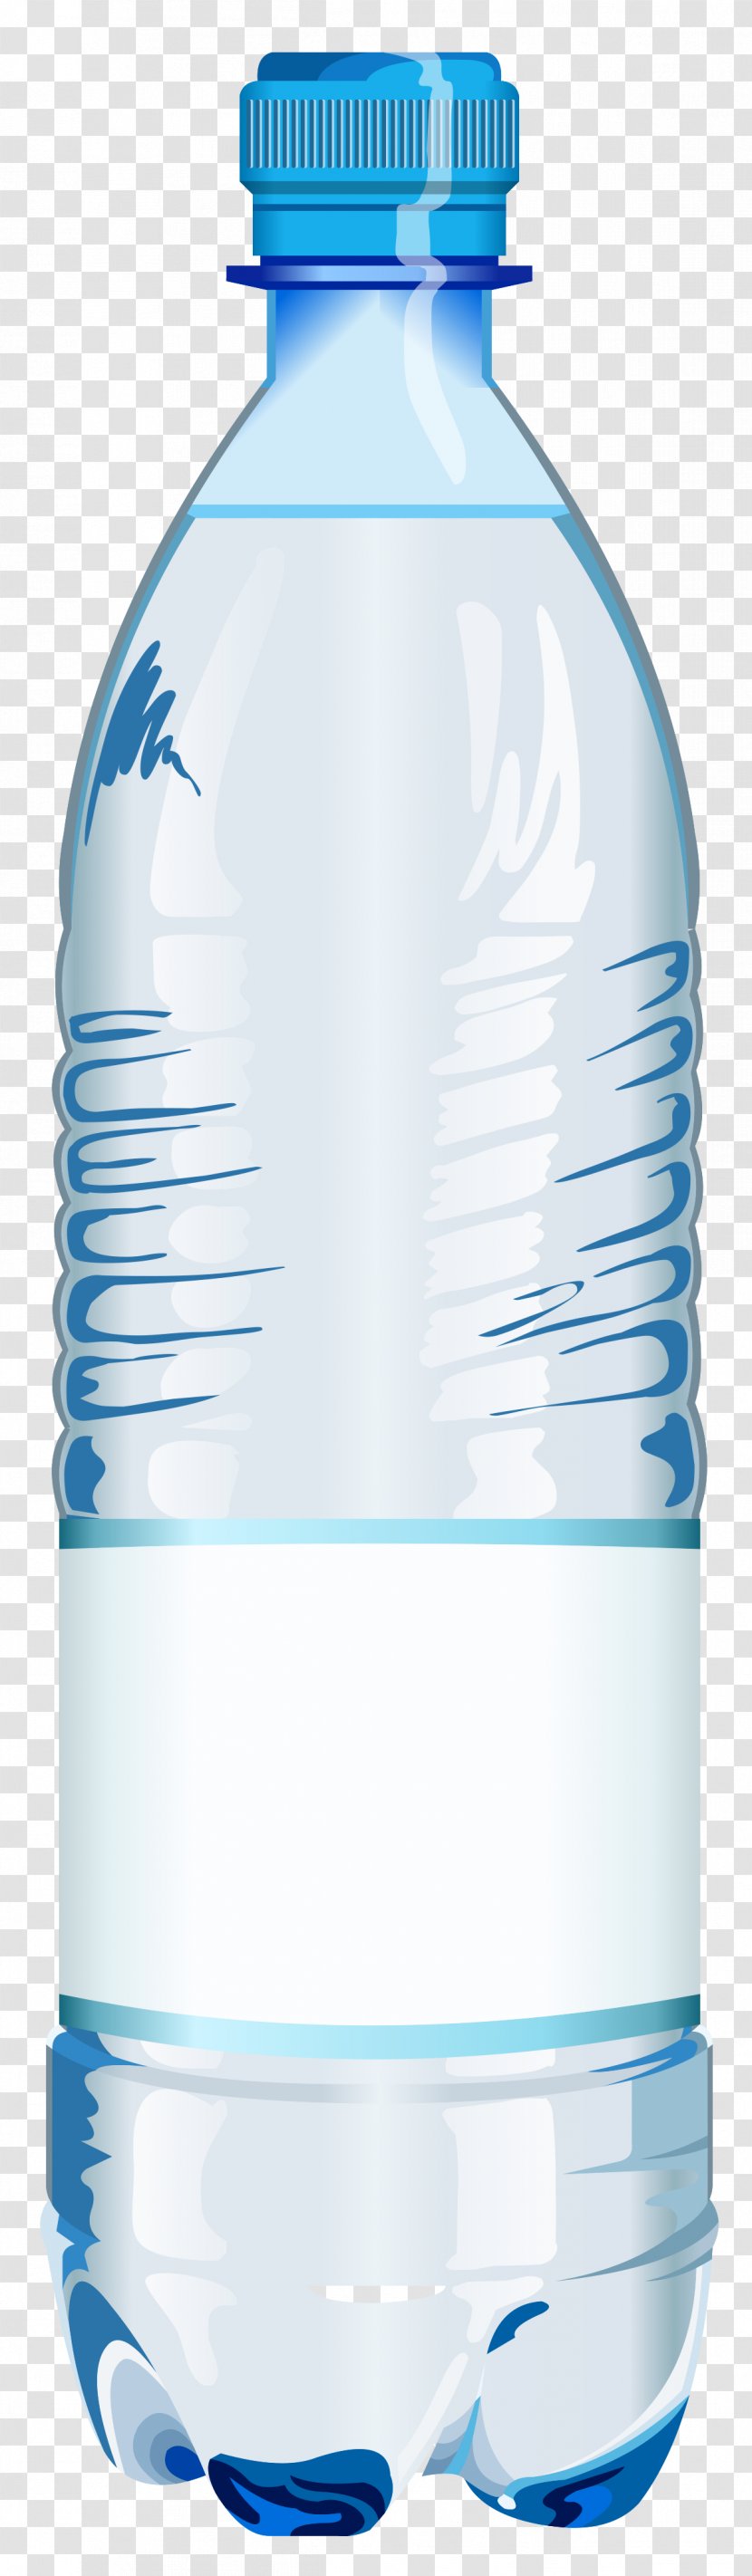 Fizzy Drinks Plastic Bottle Water Bottles Label Transparent PNG